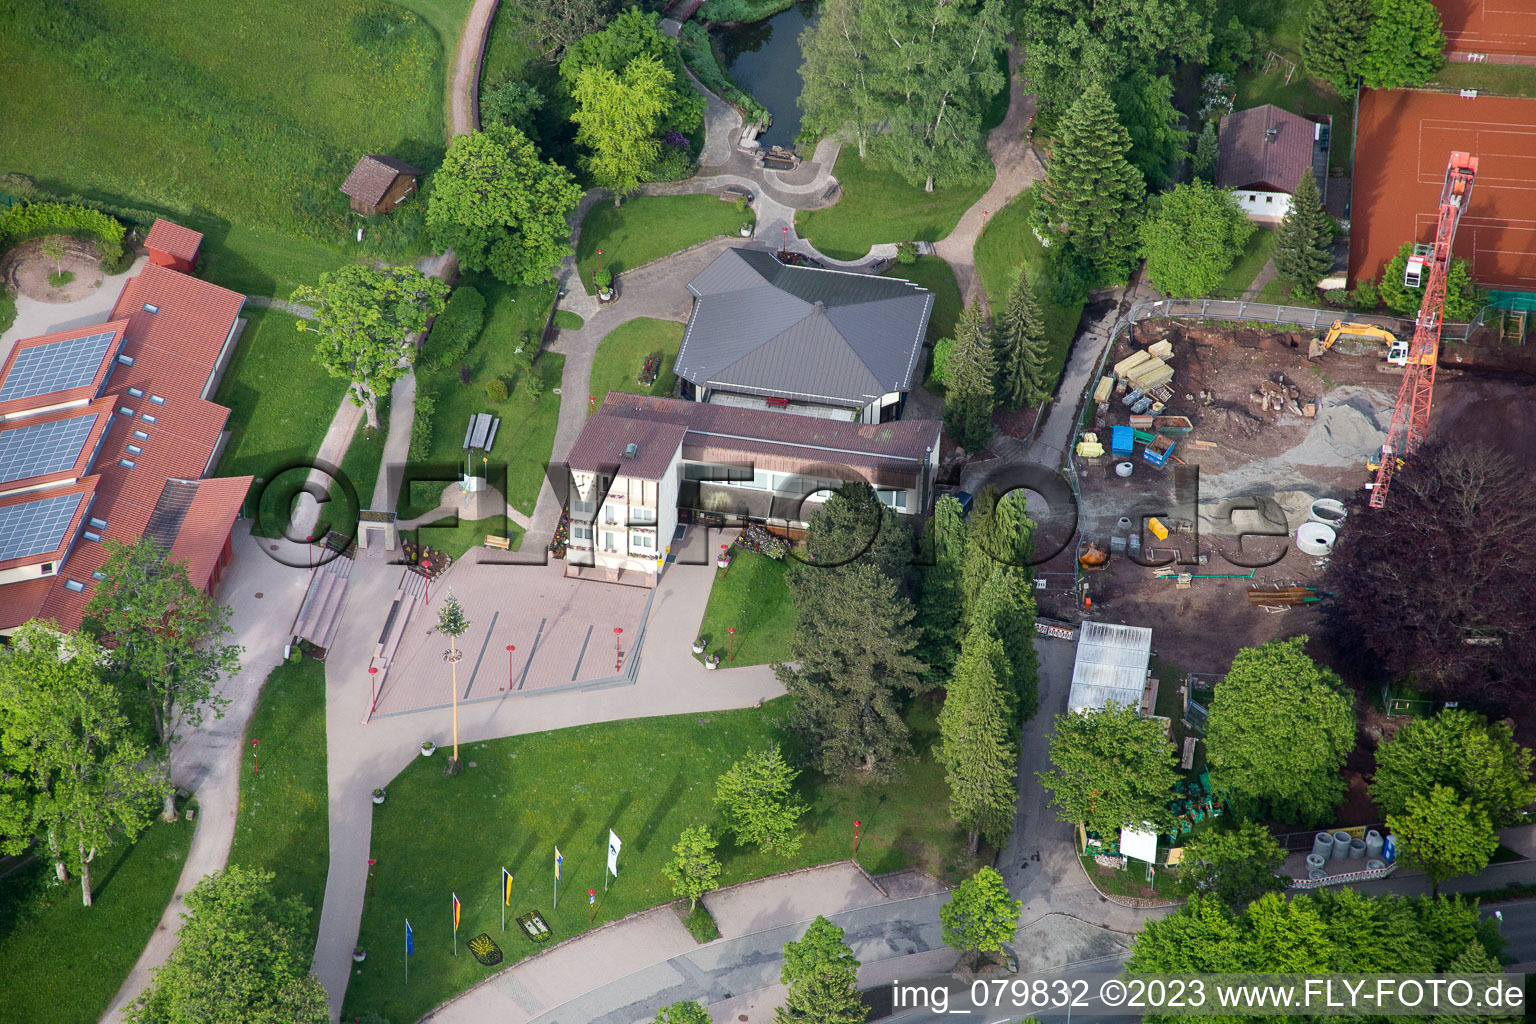 Dobel im Bundesland Baden-Württemberg, Deutschland aus der Drohnenperspektive